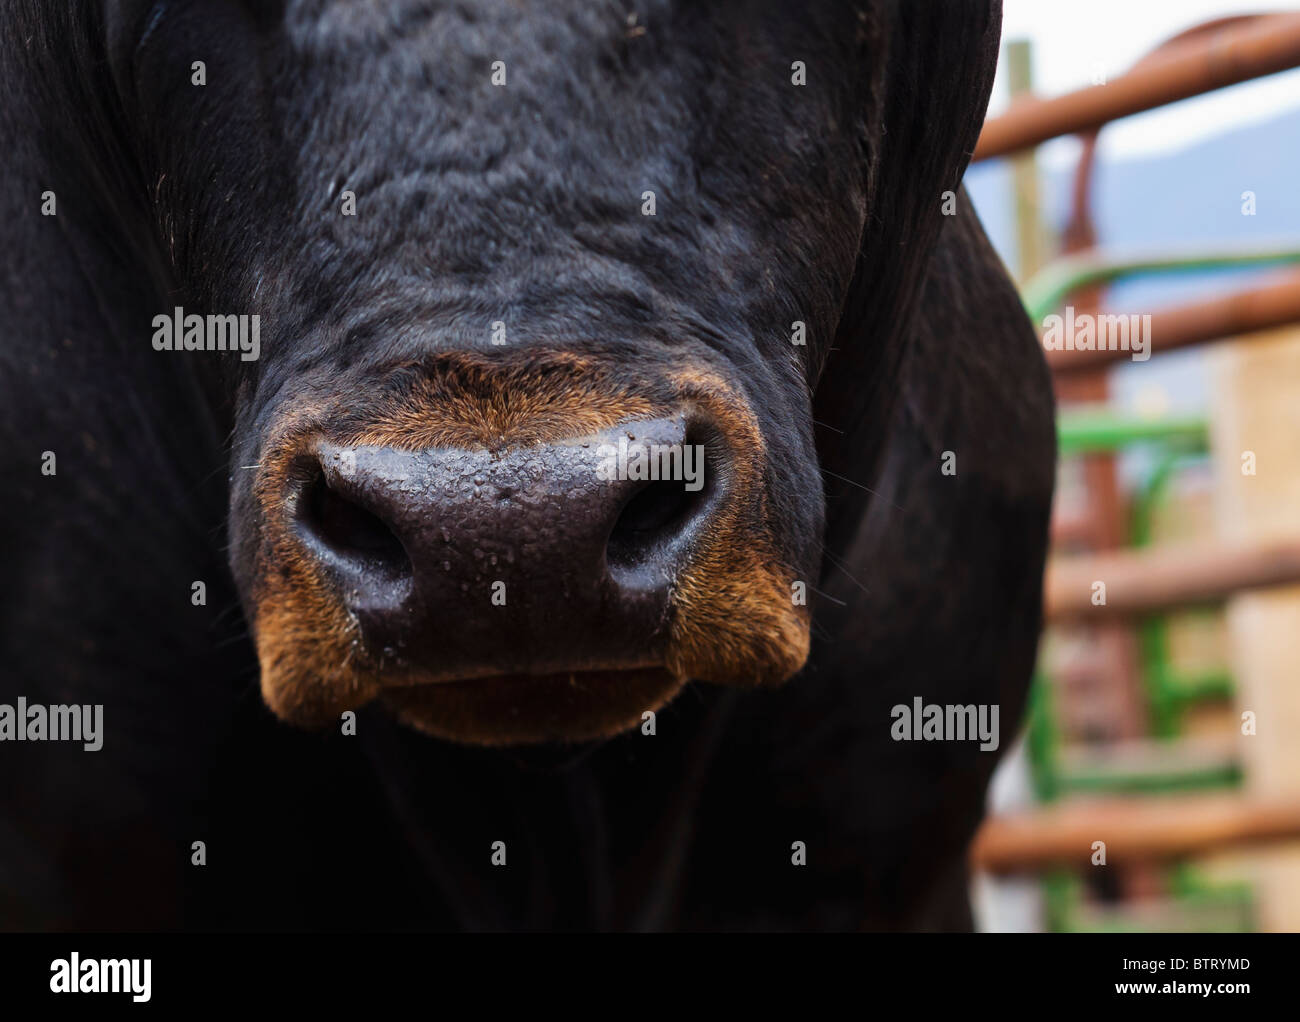 Tête sur low angle view of a large black bull dans un stylo. L'accent sur le nez. Banque D'Images